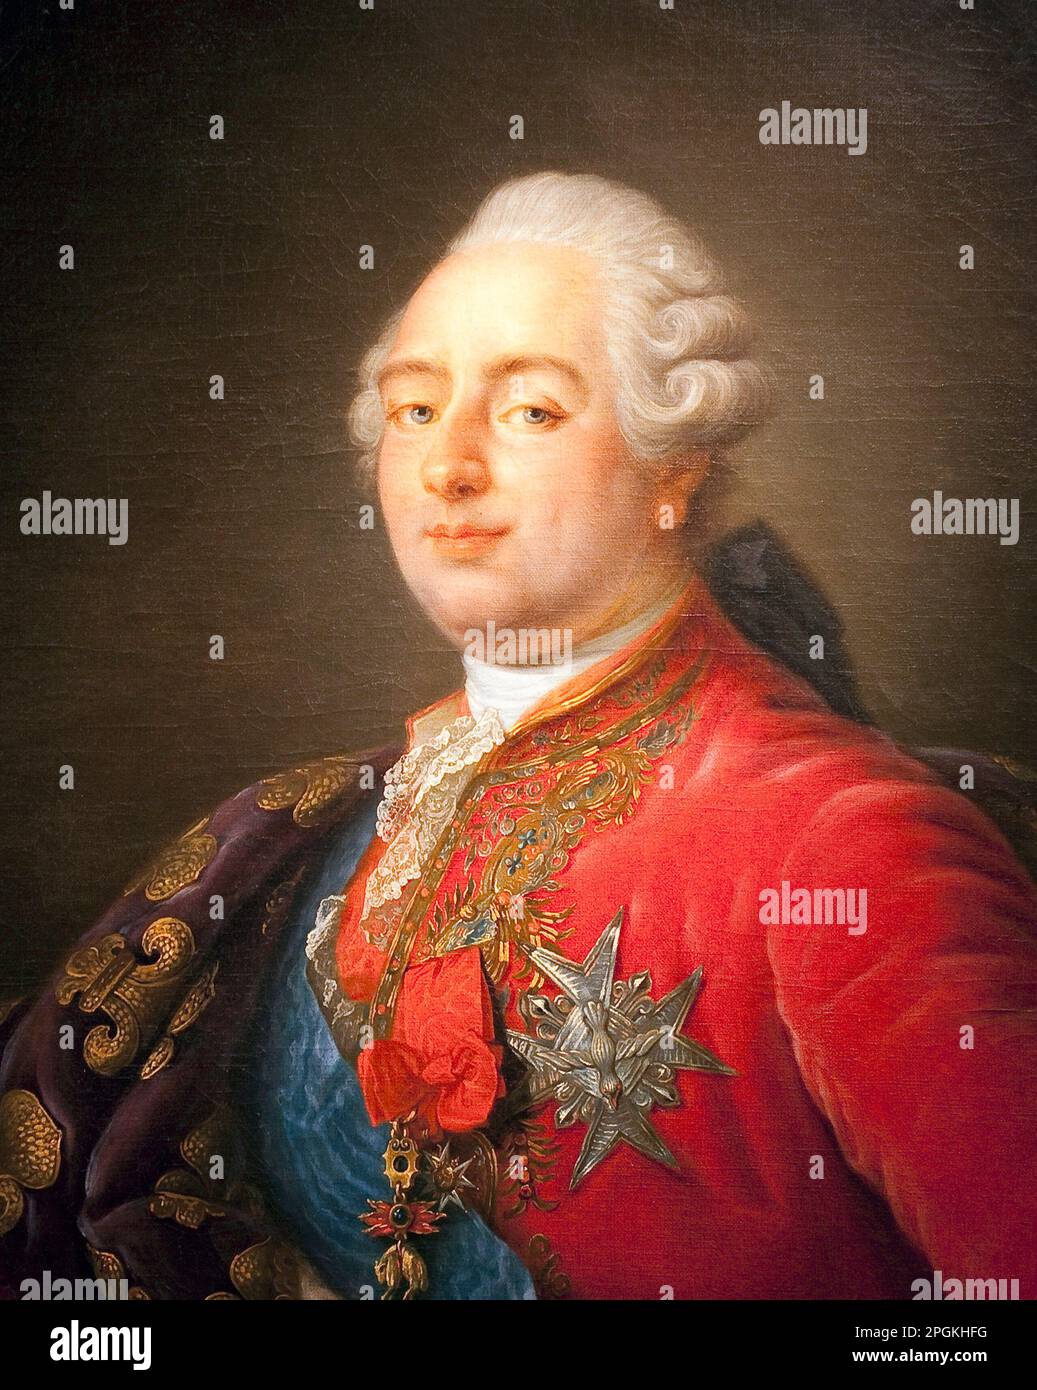 Detail du Portrait de Louis XVI (1754-1793), roi de France. Peinture de l'atelier de Antoine Francois (Antoine-Francois) callet (1741-1823). 1786. Dim. 0.915 x 0.730 m. Parigi, Musee Carnavalet Foto Stock